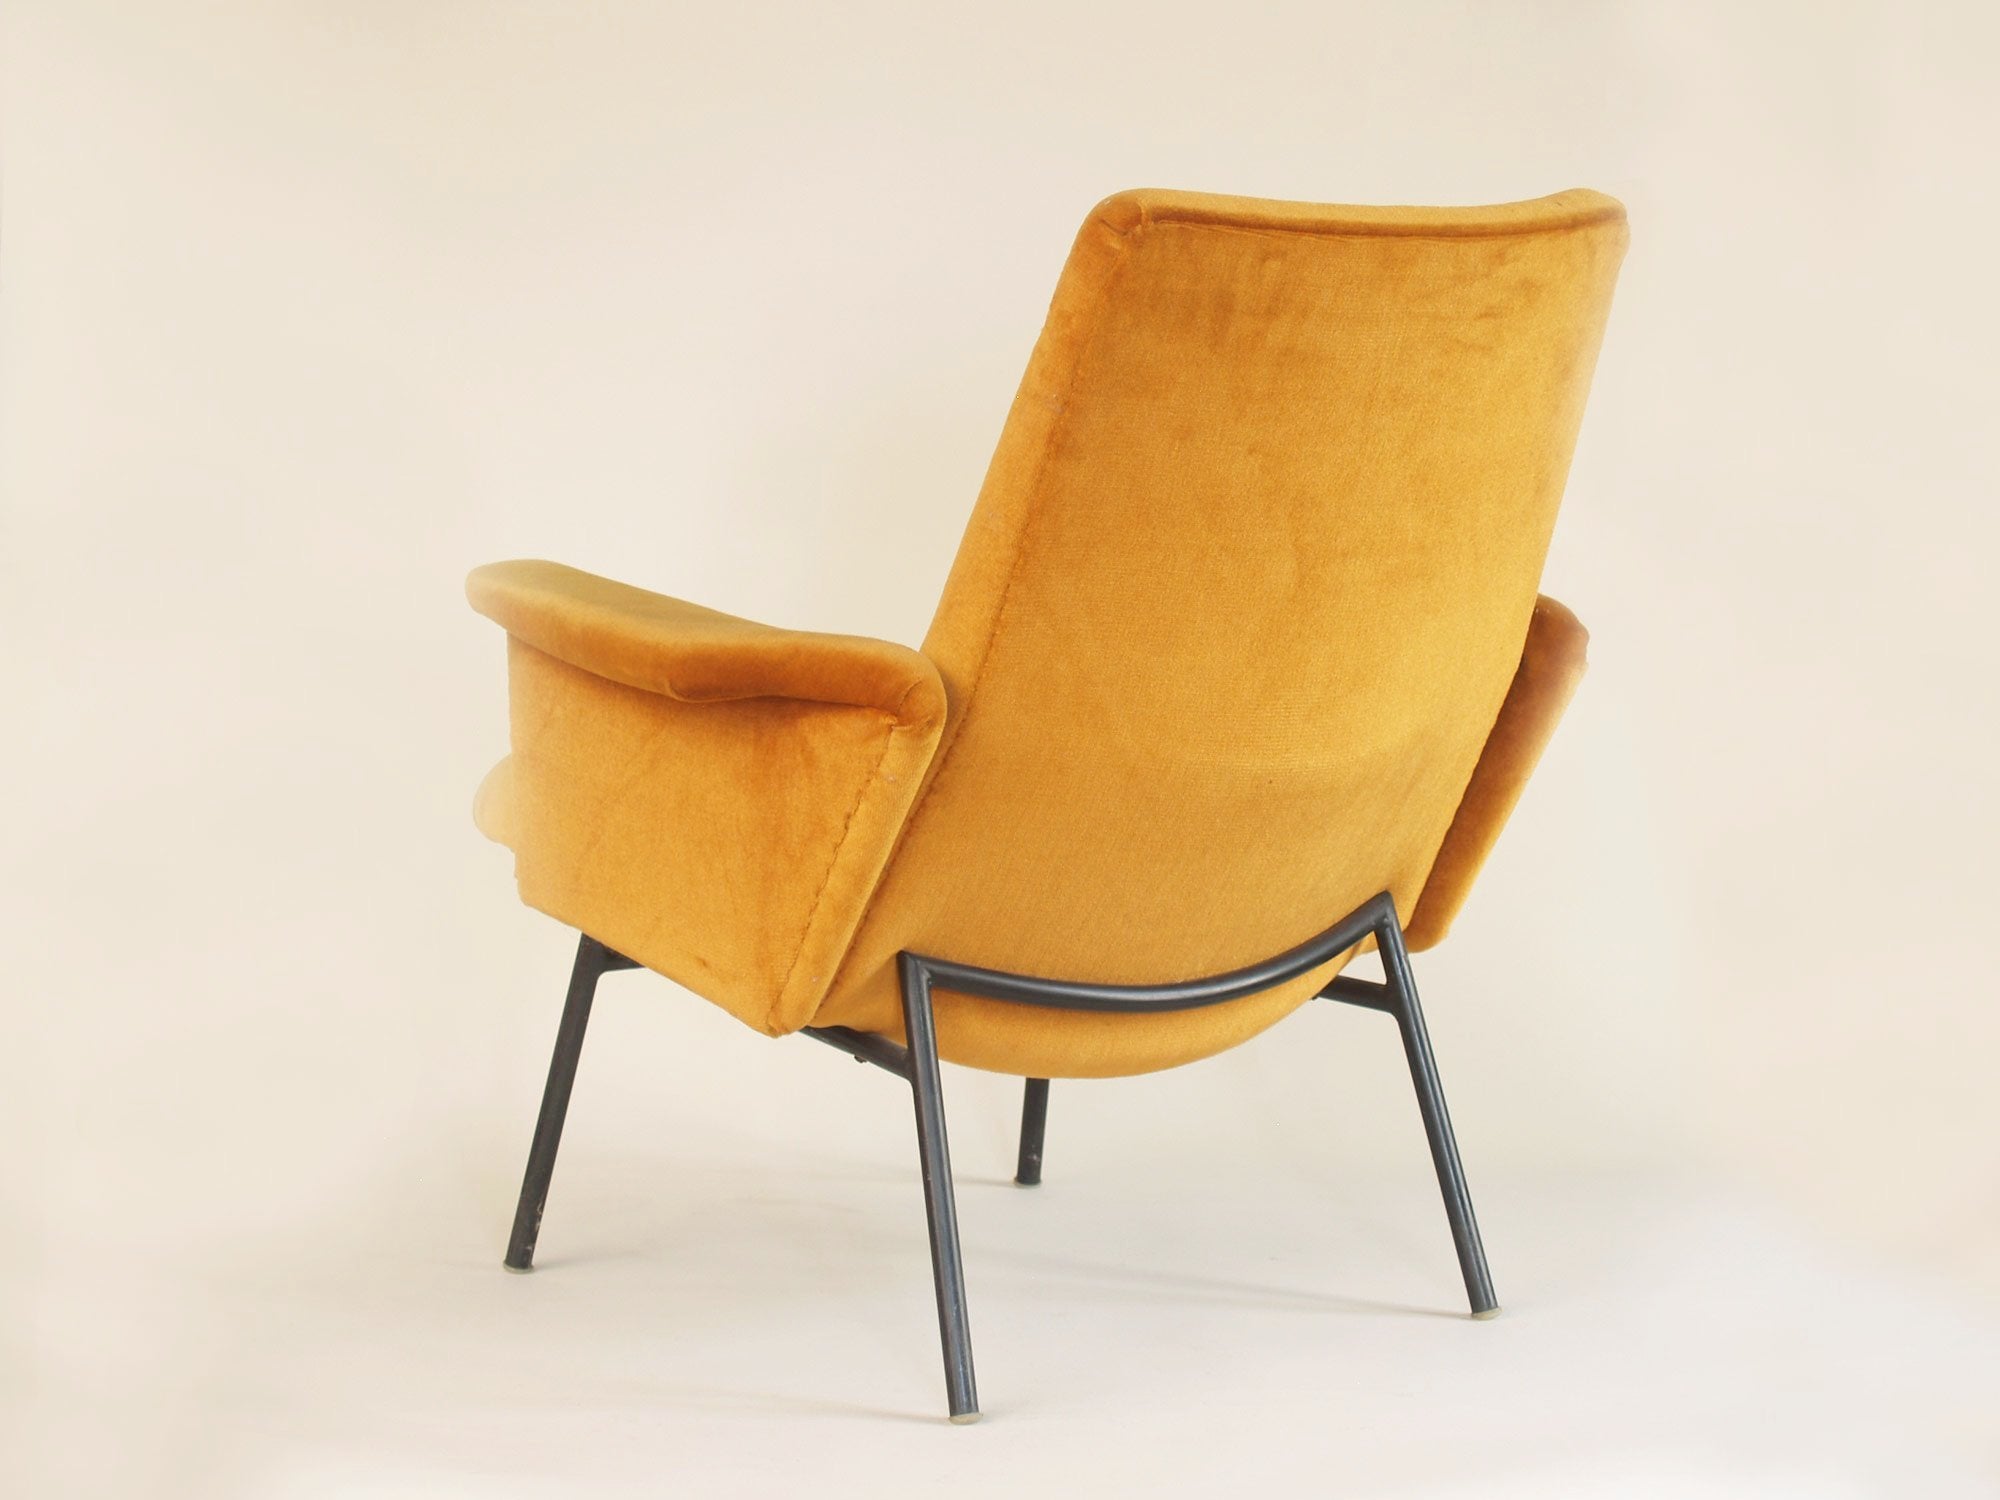 Paire de fauteuils SK660 par Pierre Guariche pour Steiner, France (1953)..Pair of SK660 chairs by Pierre Guariche for Steiner, France (1953)